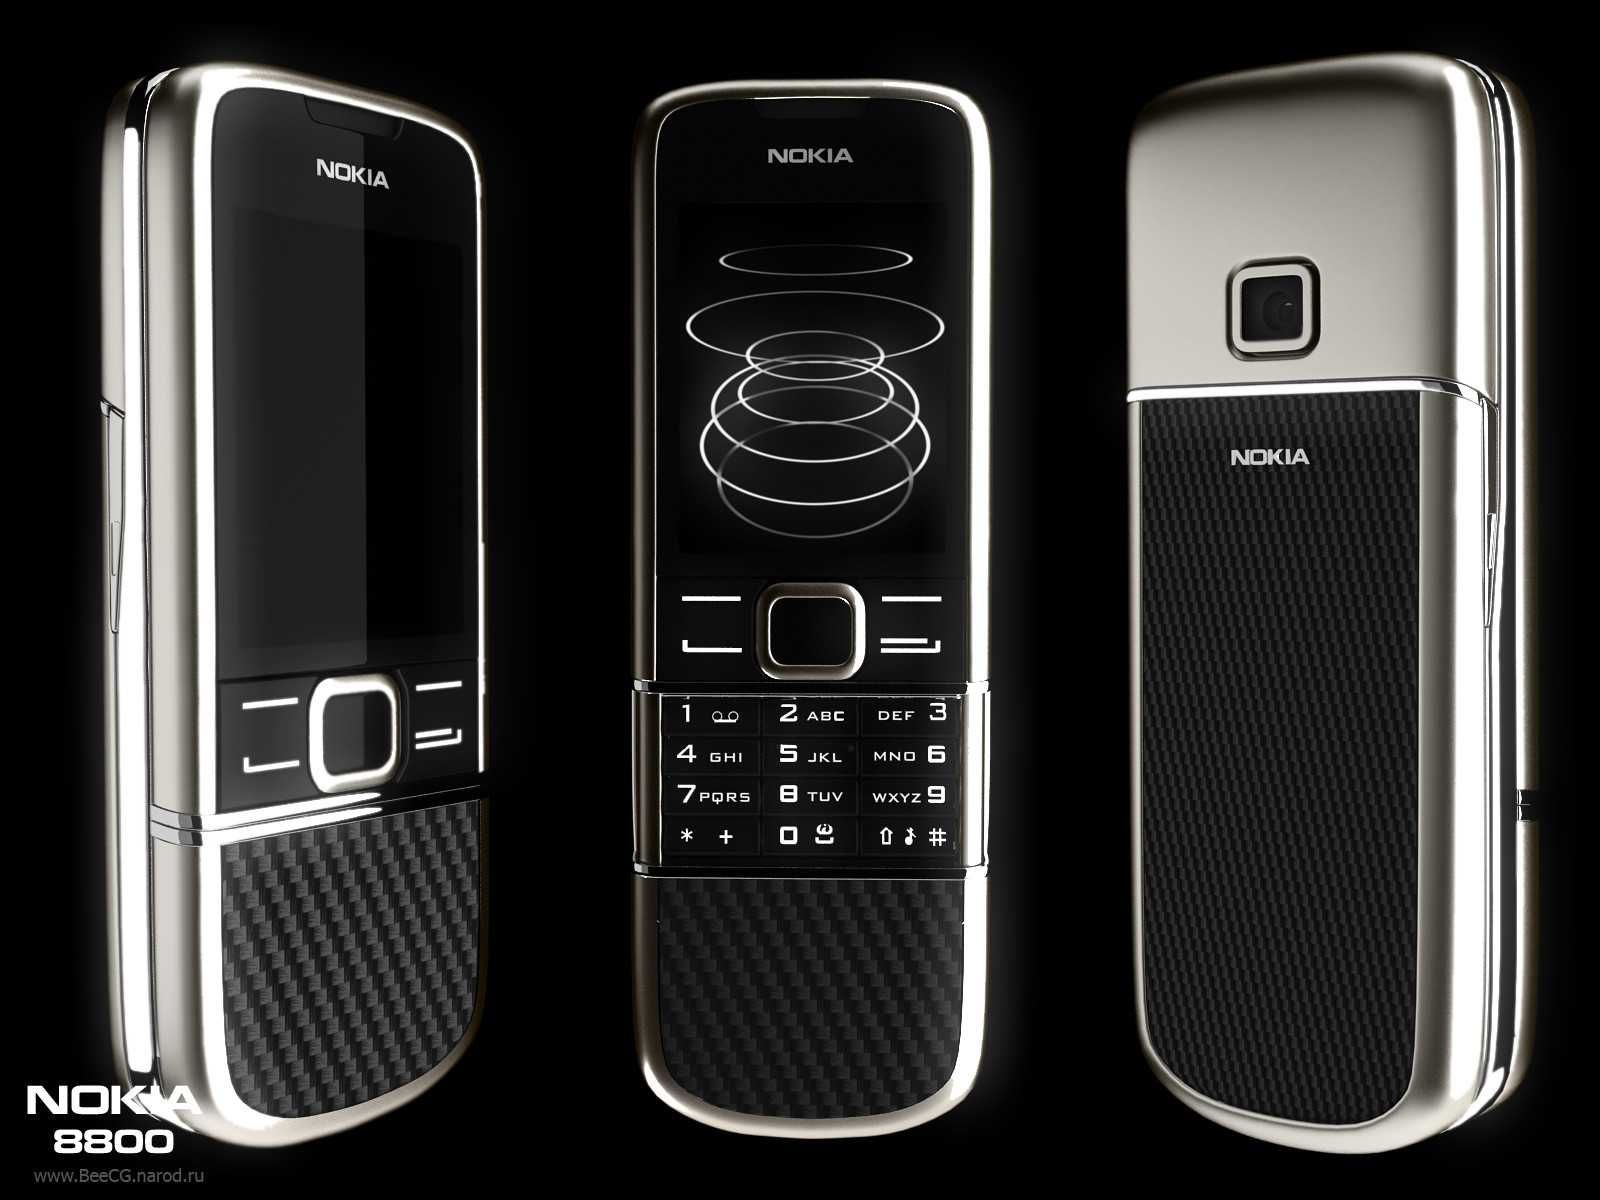 Hình nền Nokia 8800 Carbon Arte là sự kết hợp hoàn hảo giữa vẻ đẹp sang trọng và độ bền cao. Với thiết kế nổi bật, bạn đảm bảo sẽ tìm được hình nền phù hợp với phong cách của mình.